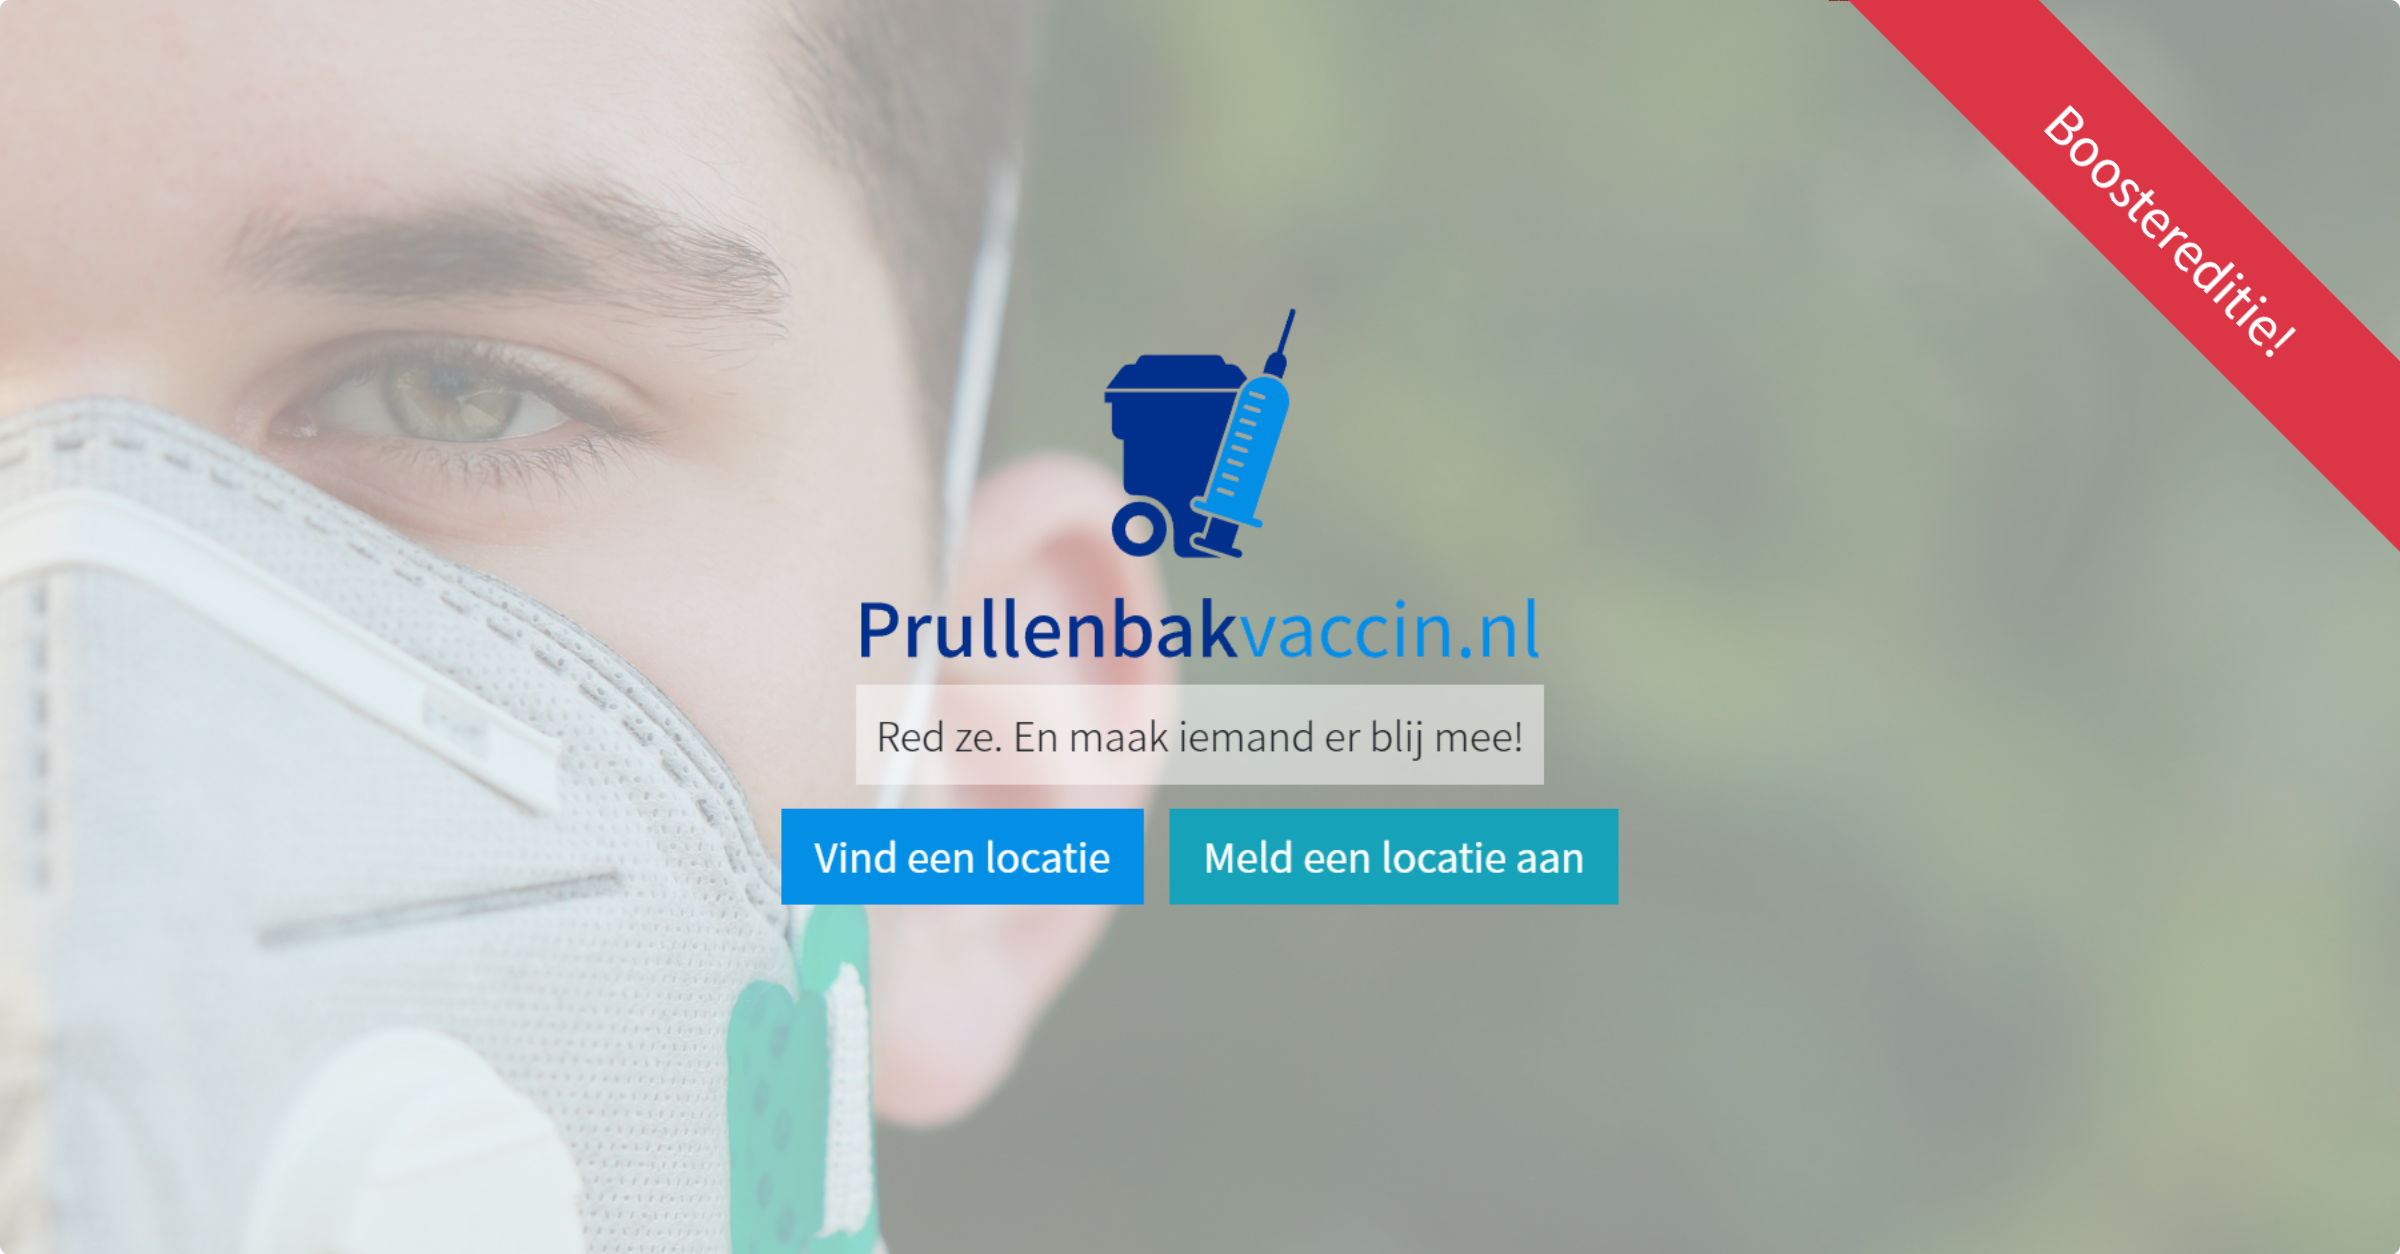 www.prullenbakvaccin.nl